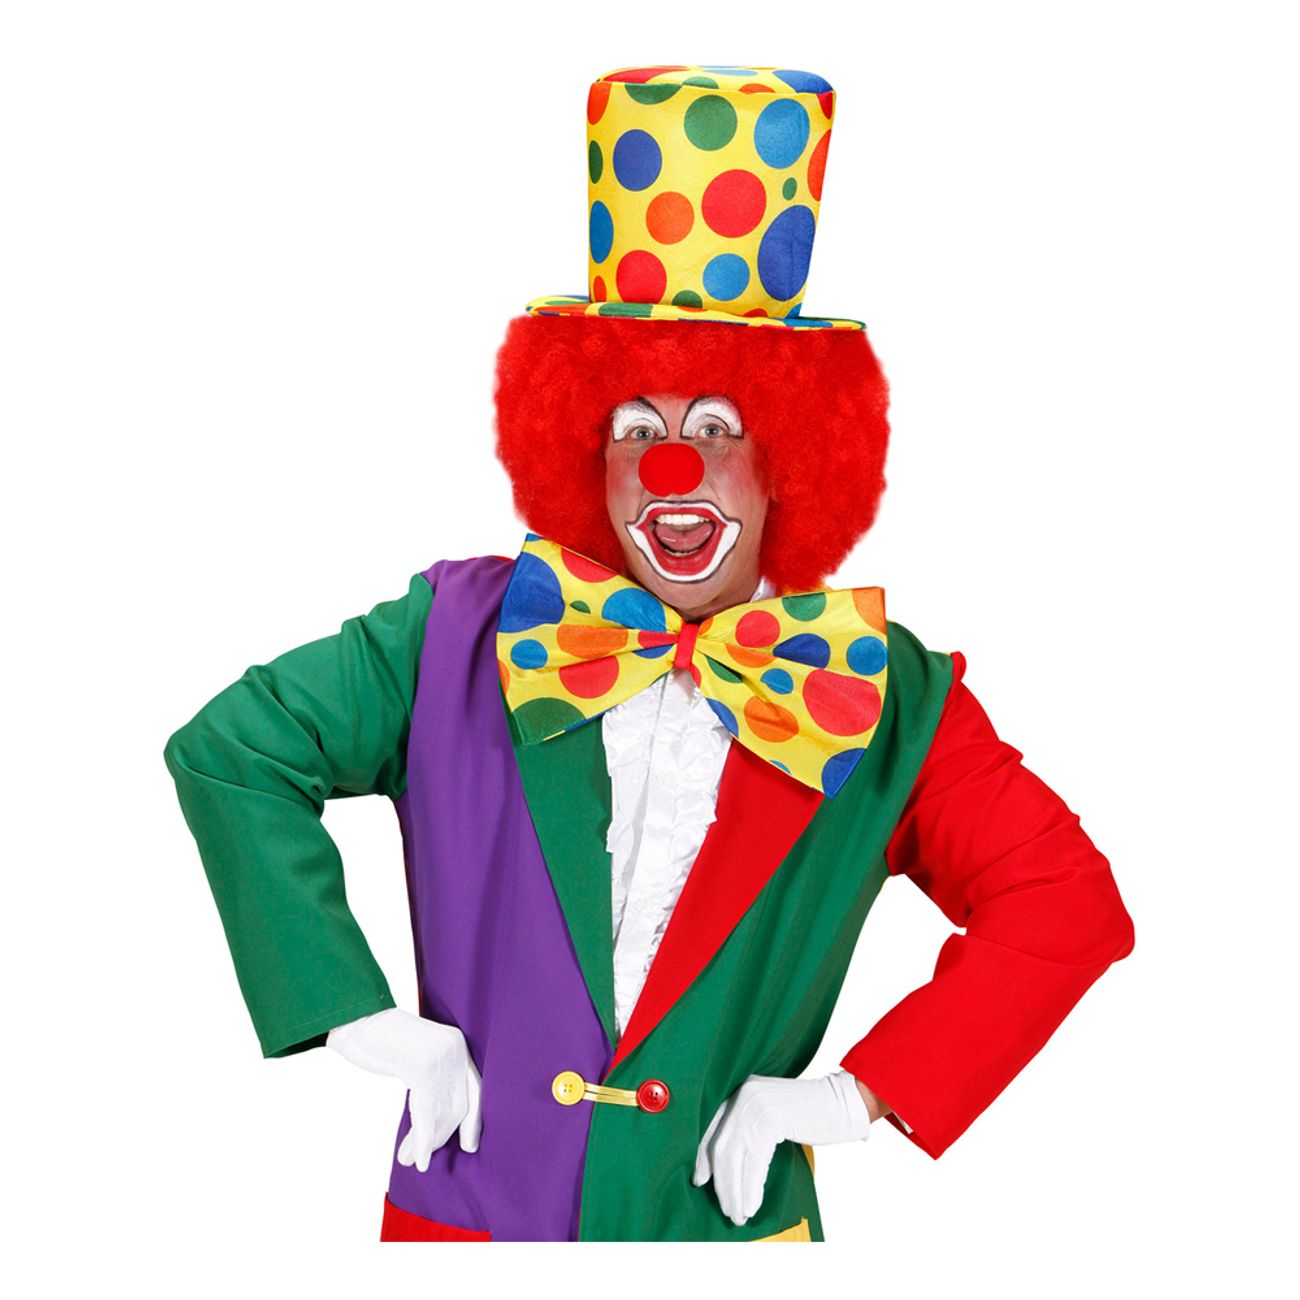 clown-hoghatt-2